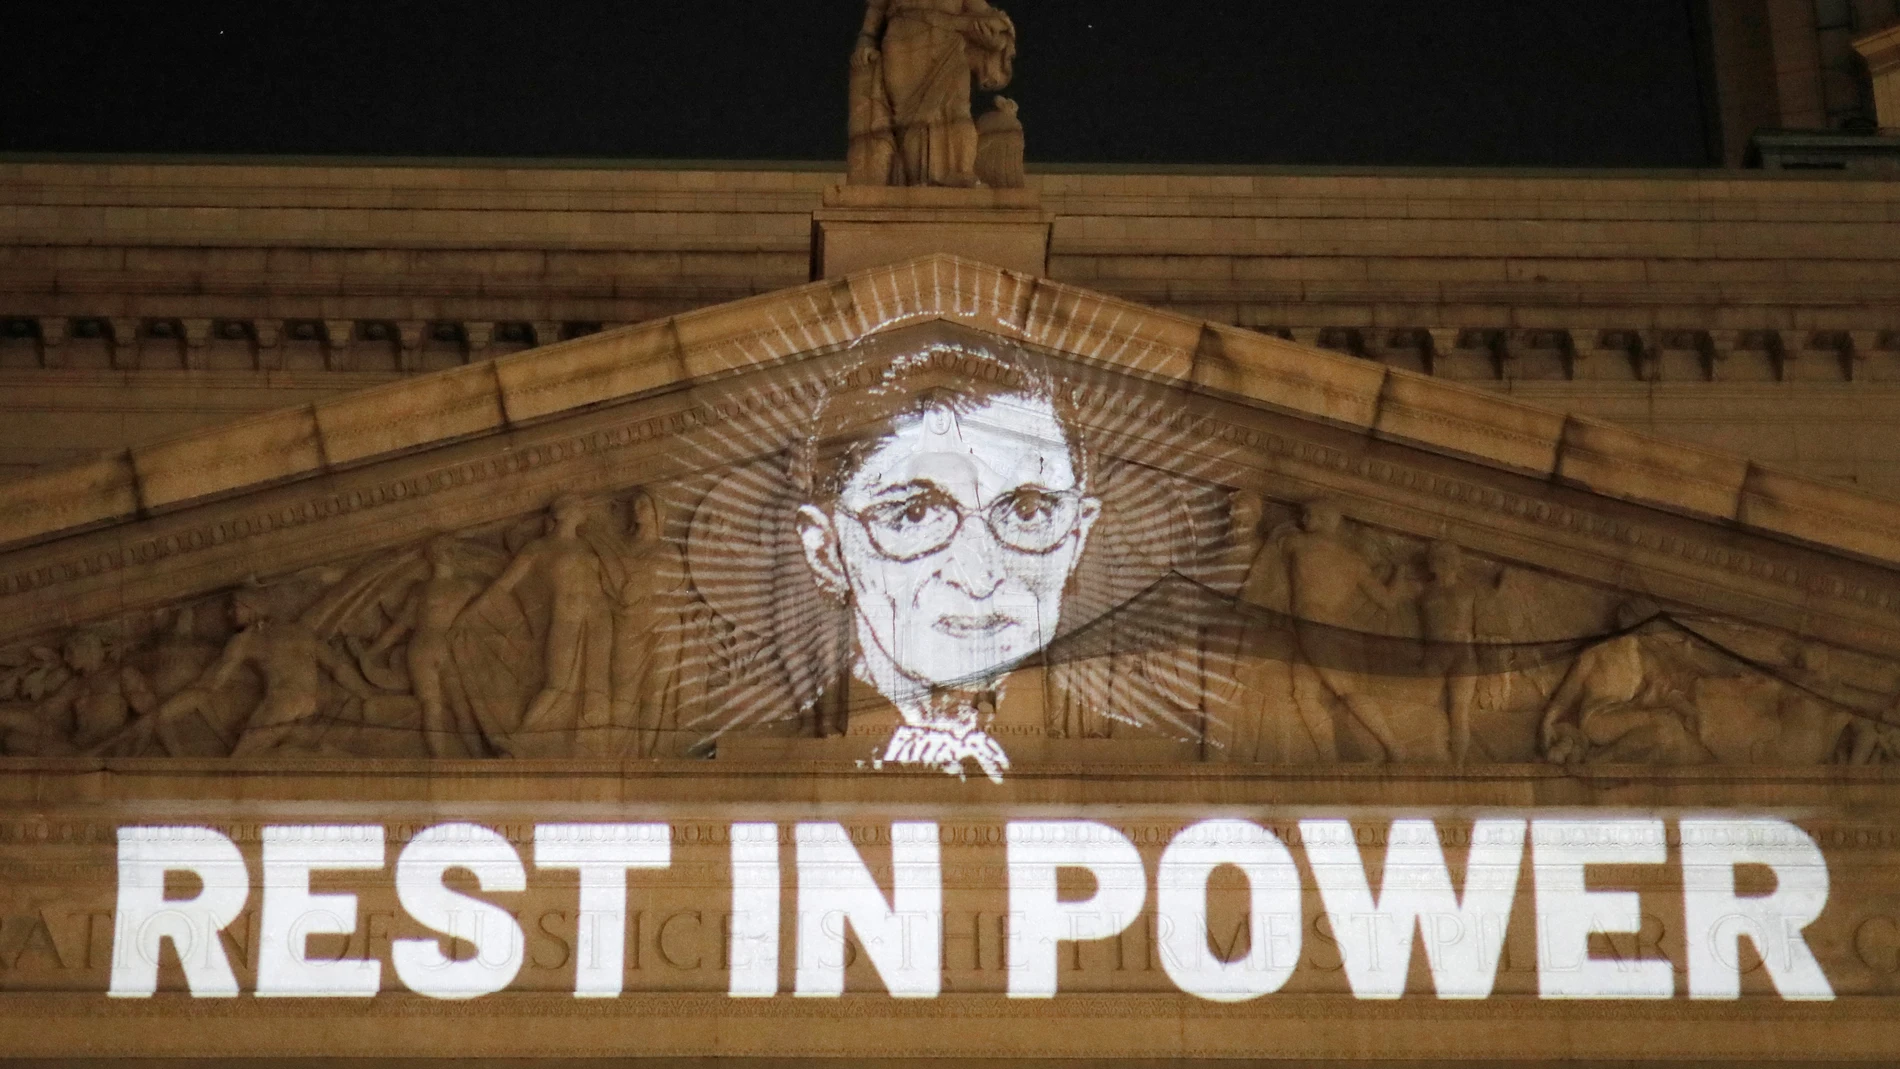 Imagen proyectada en la fachada del Tribuna Supremo en memoria de Ruth Bader Ginsburg